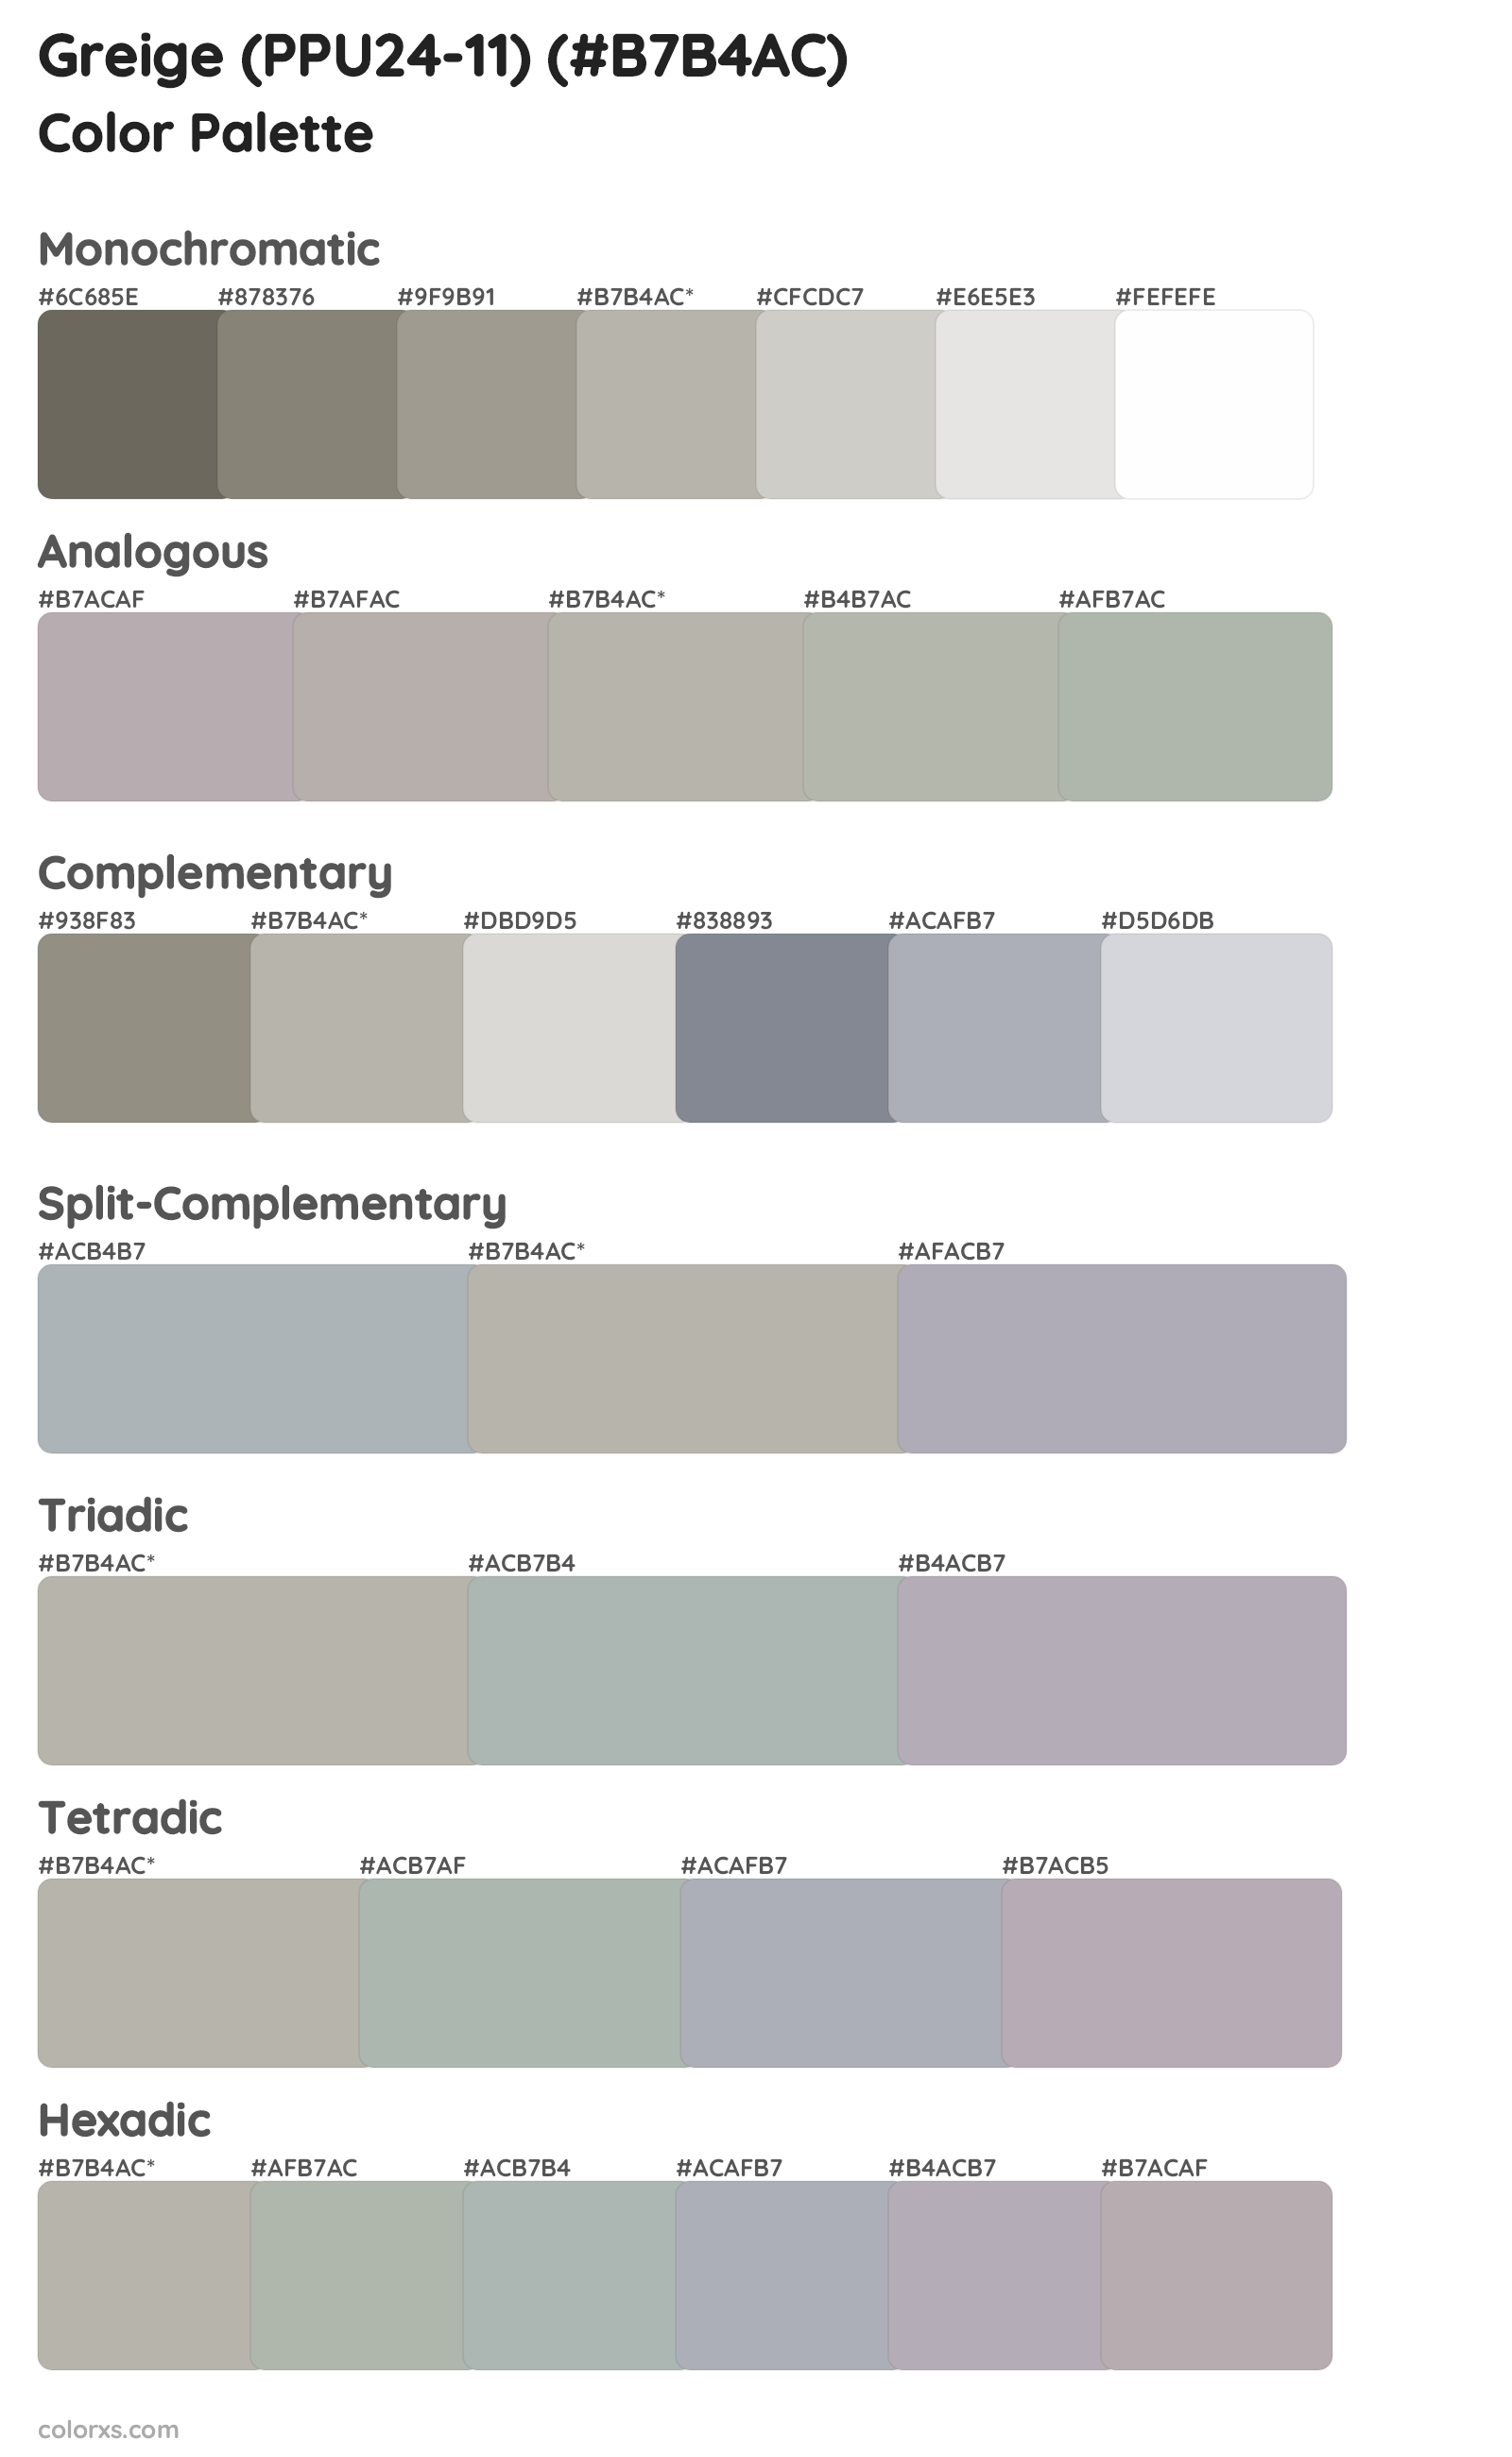 Greige (PPU24-11) Color Scheme Palettes